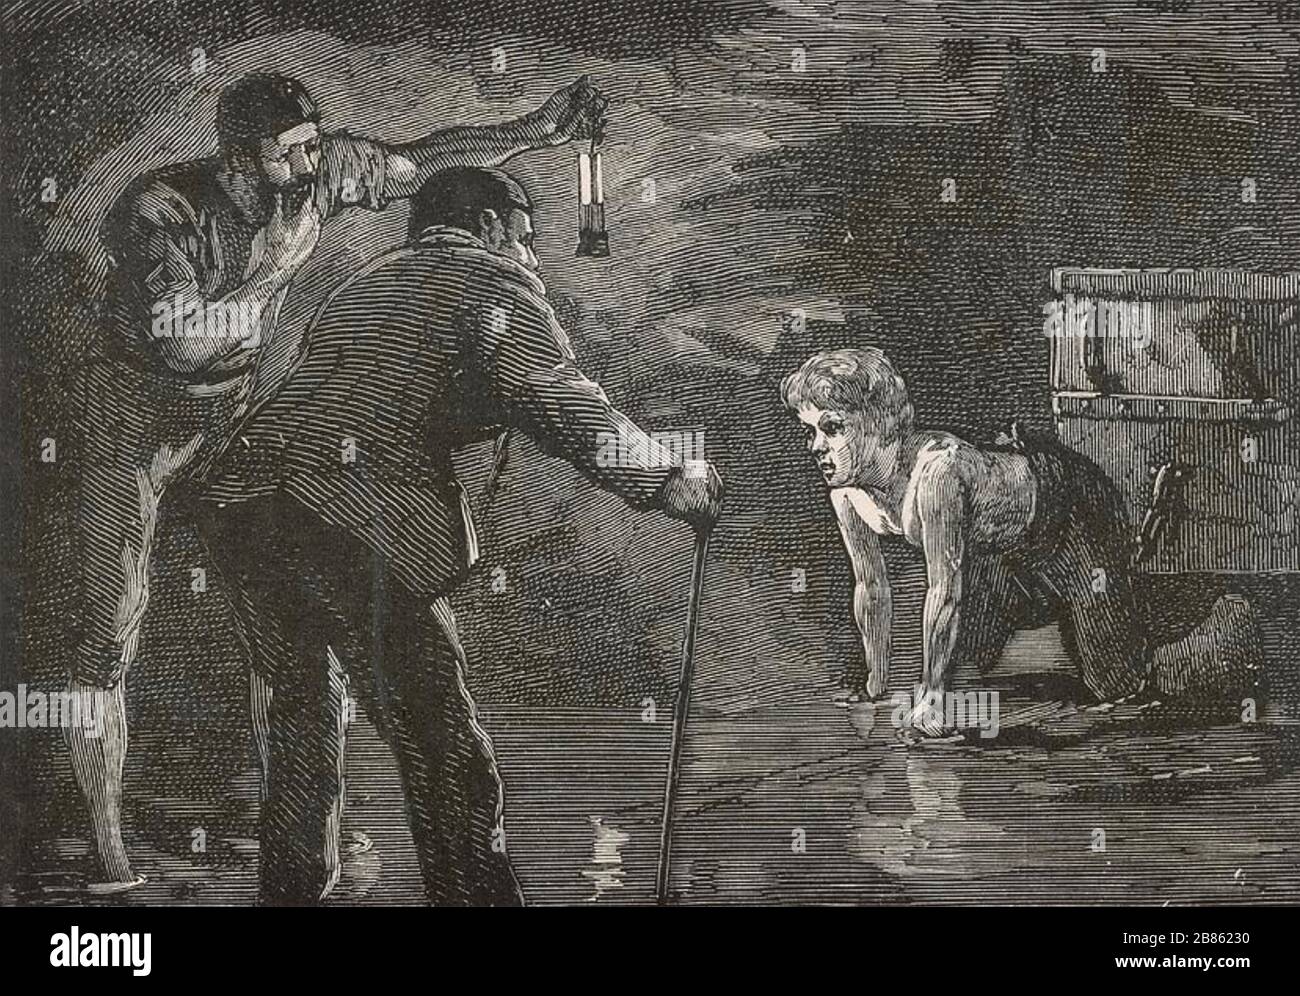 ANTHONY ASHLEY-COOPER, 7ème comte de Shaftesbury - Lord Shaftesbury)(1801-1885) politicien anglais et réformateur social visitant une mine de charbon vers 1840 Banque D'Images